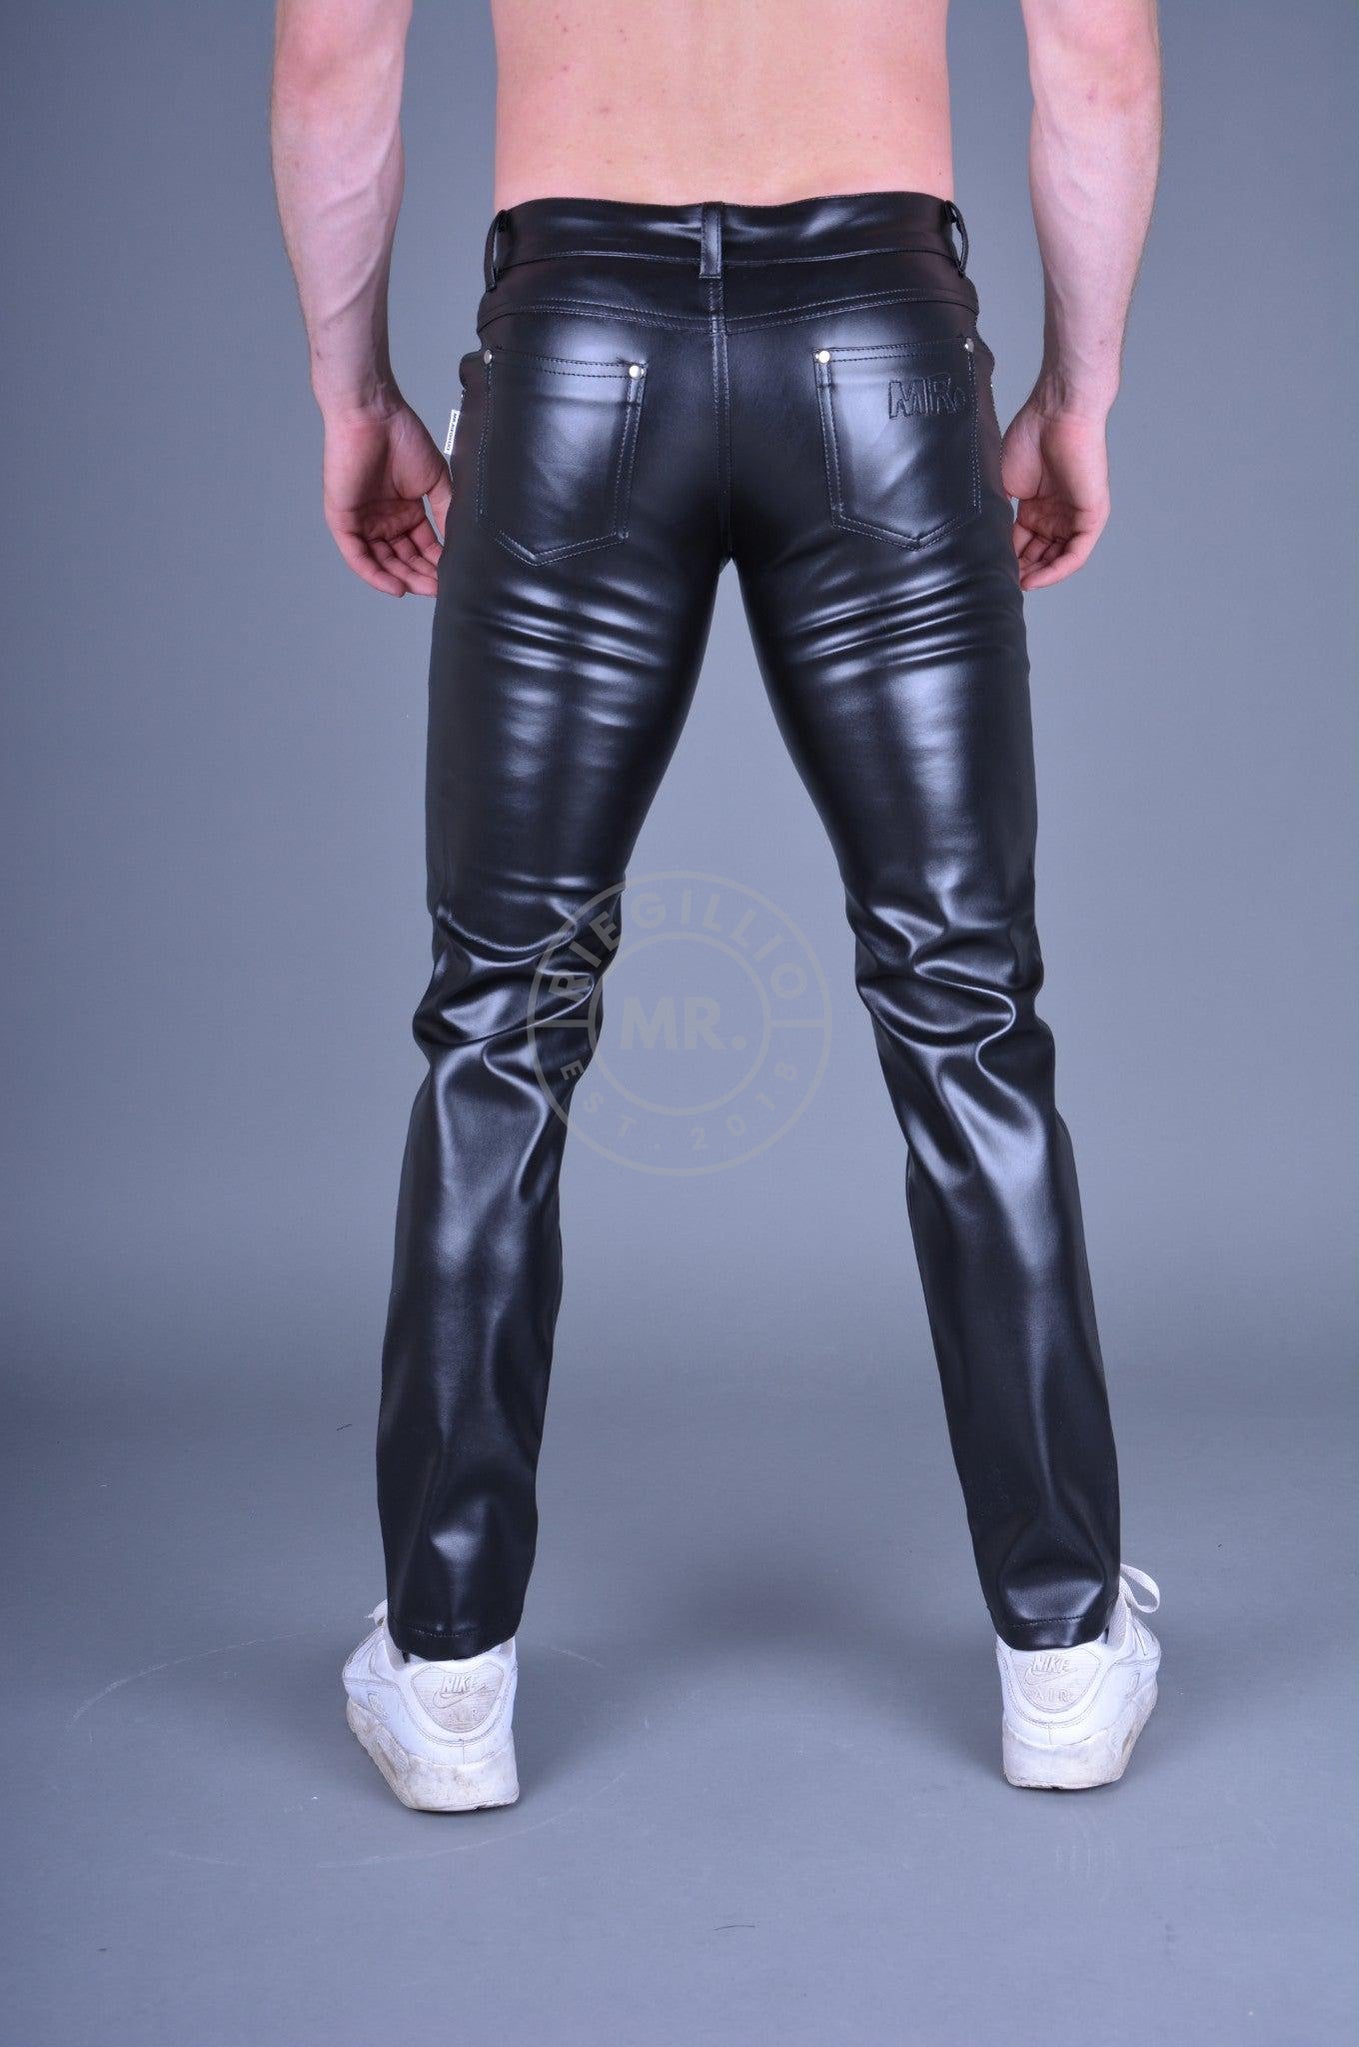 Black MR. 5-Pocket Pants at MR. Riegillio